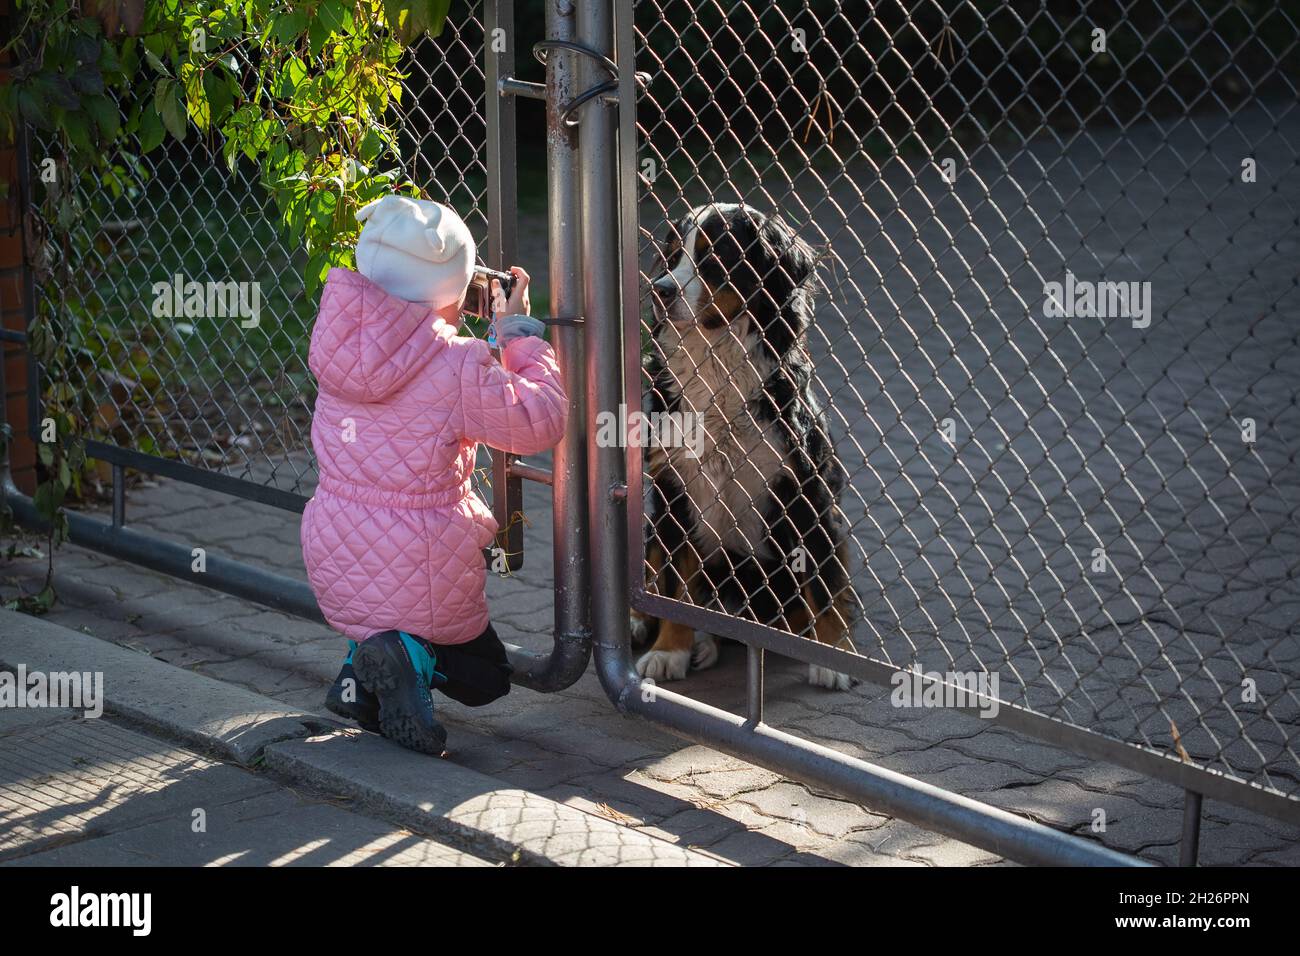 A girl photographs a dog through a gate Stock Photo